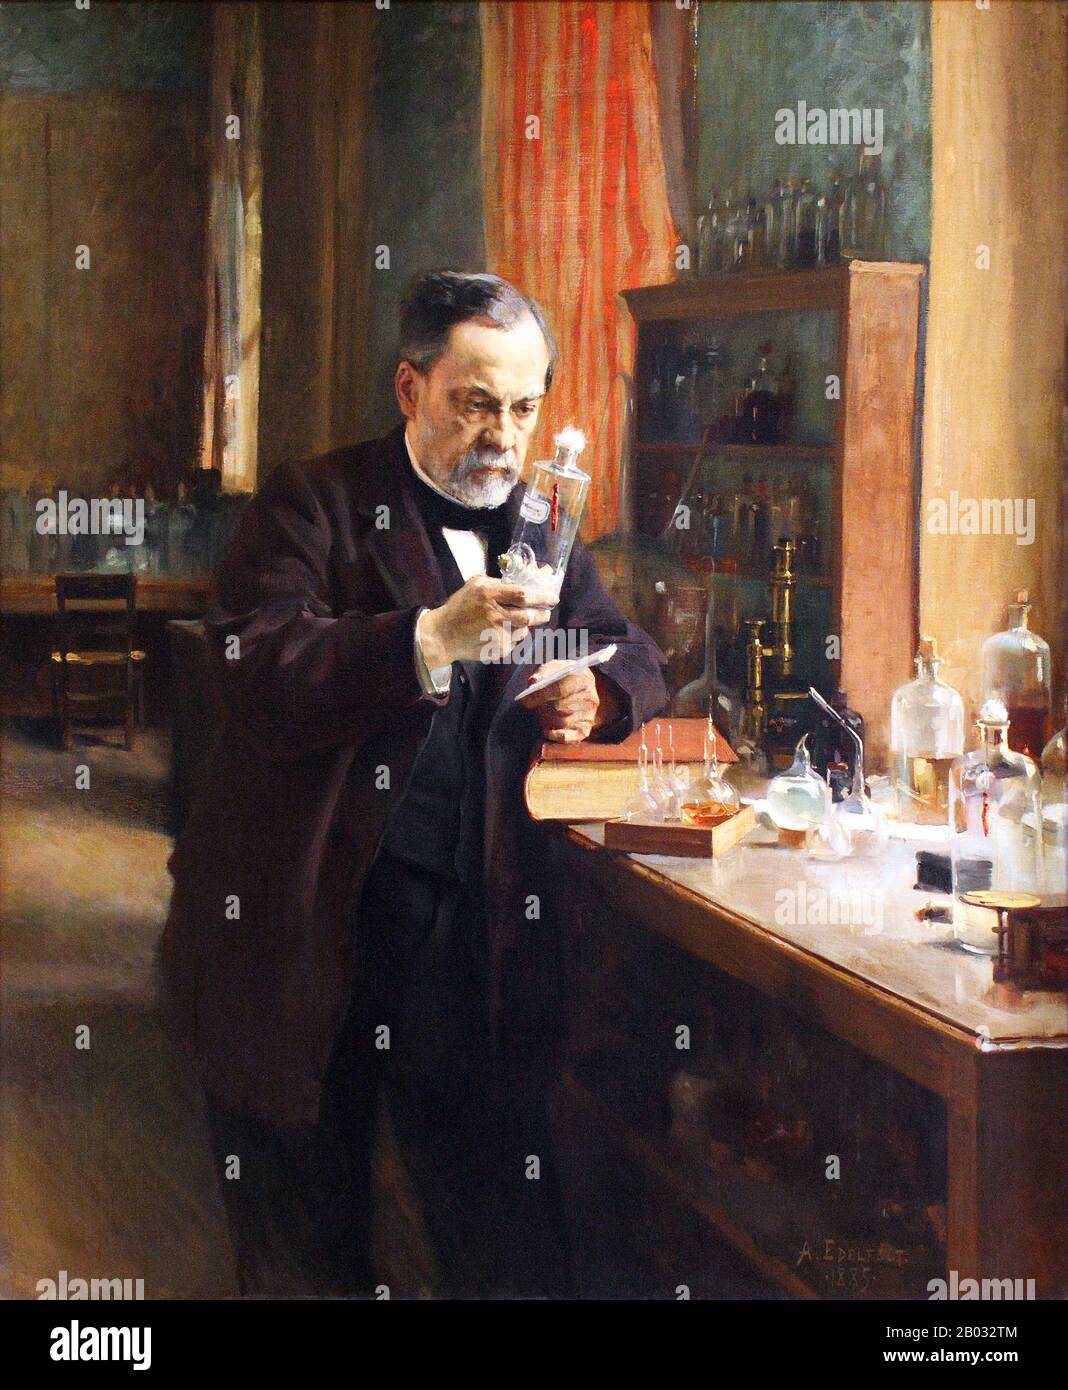 Louis Pasteur (1822-1895) war ein französischer Chemiker und Mikrobiologe, der für seine Entdeckungen der Prinzipien der Impfung, der mikrobiellen Fermentation und der Pasteurisierung bekannt ist. Er reduzierte die Sterblichkeit durch Puerperalfieber und schuf die ersten Impfstoffe für Tollwut und Milzbrand. Pasteurs medizinische Entdeckungen unterstützten die Keimtheorie der Krankheit und ihre Anwendung in der klinischen Medizin direkt. Zusammen mit Ferdinand Cohn und Robert Koch gilt er als einer der drei Hauptgründer der Bakteriologie. Stockfoto